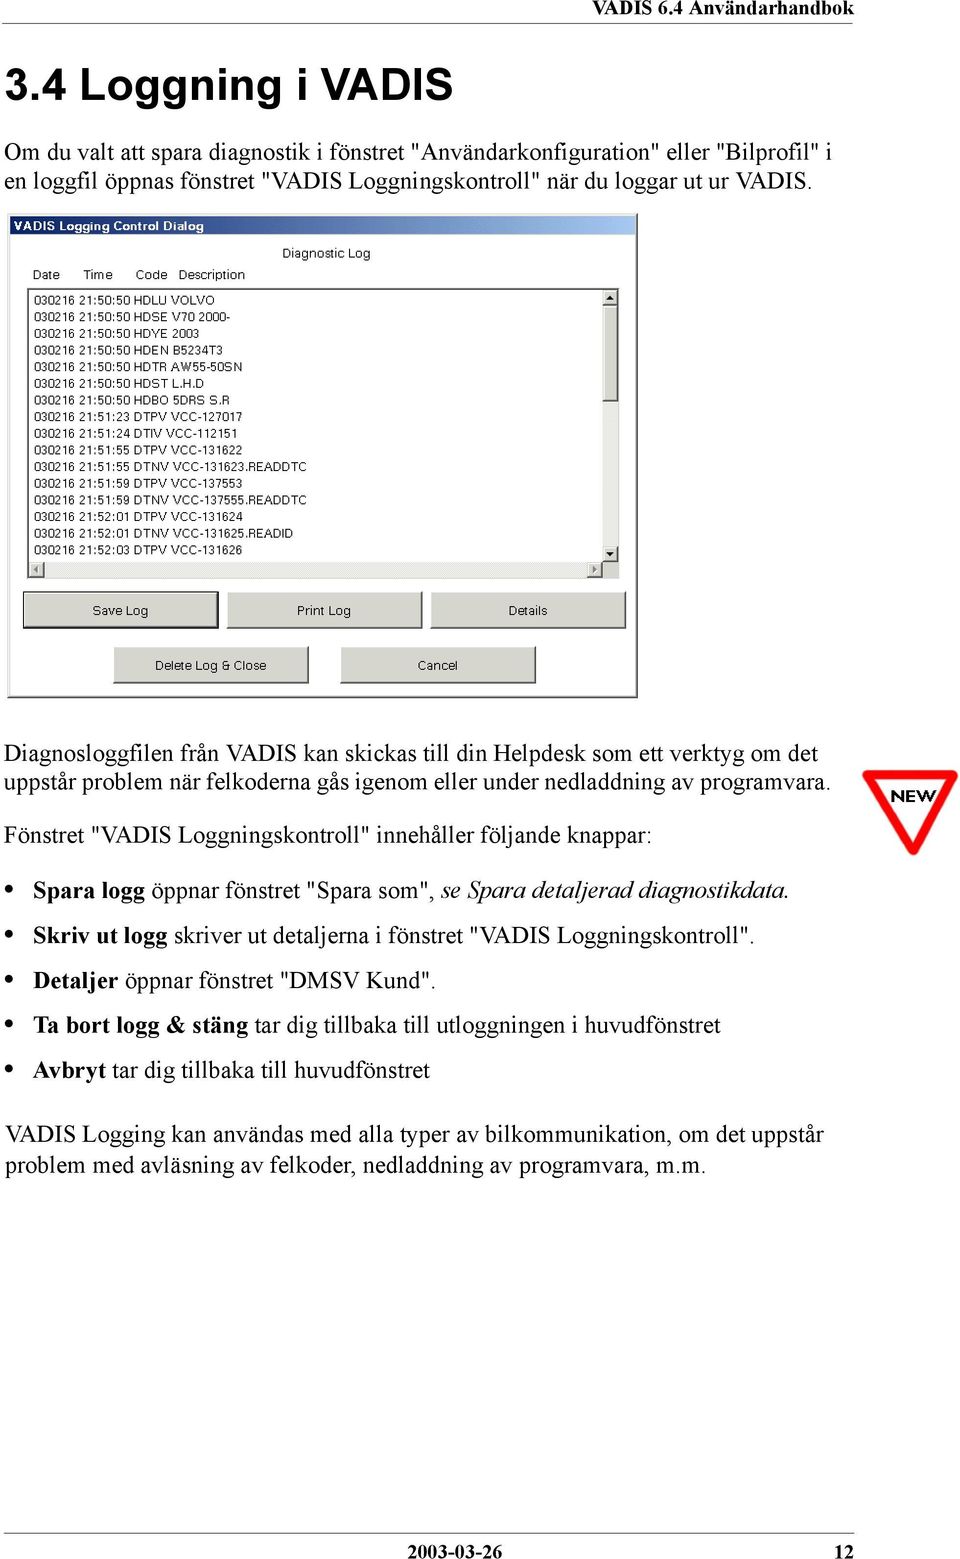 Fönstret "VADIS Loggningskontroll" innehåller följande knappar: Spara logg öppnar fönstret "Spara som", se Spara detaljerad diagnostikdata.